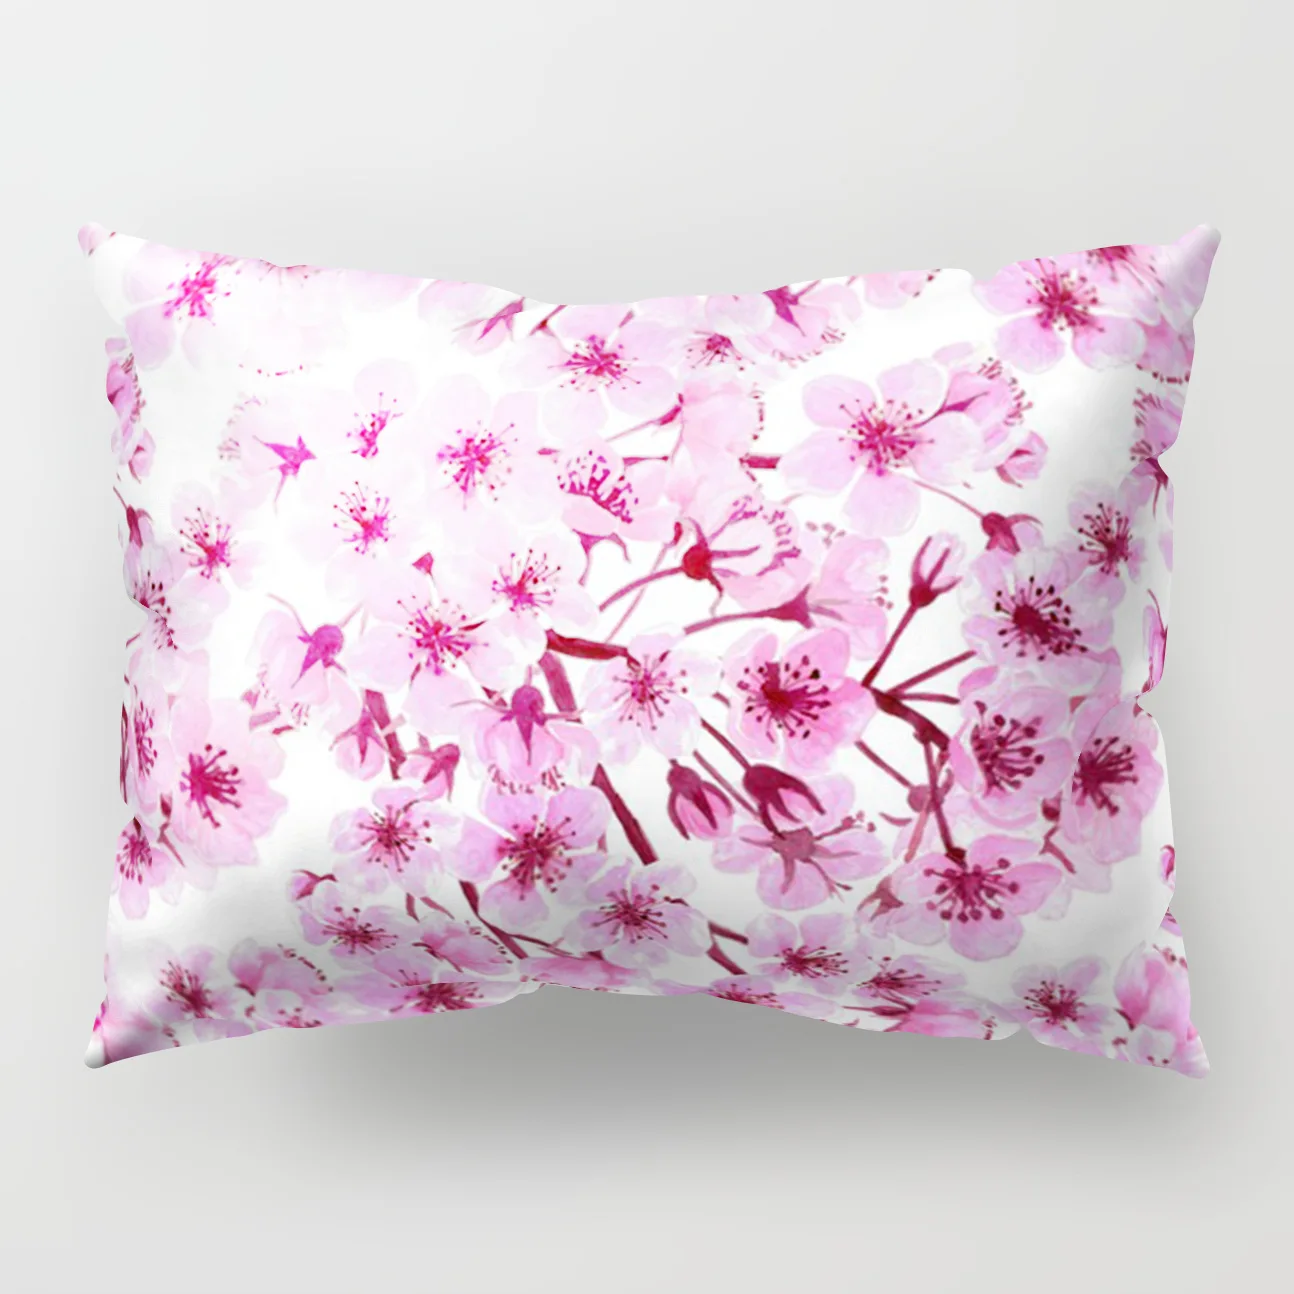 Лучшая односторонняя наволочка из полиэстера 50x30 см прямоугольная наволочка для дивана домашний декор розовый цветок наволочка для подушки